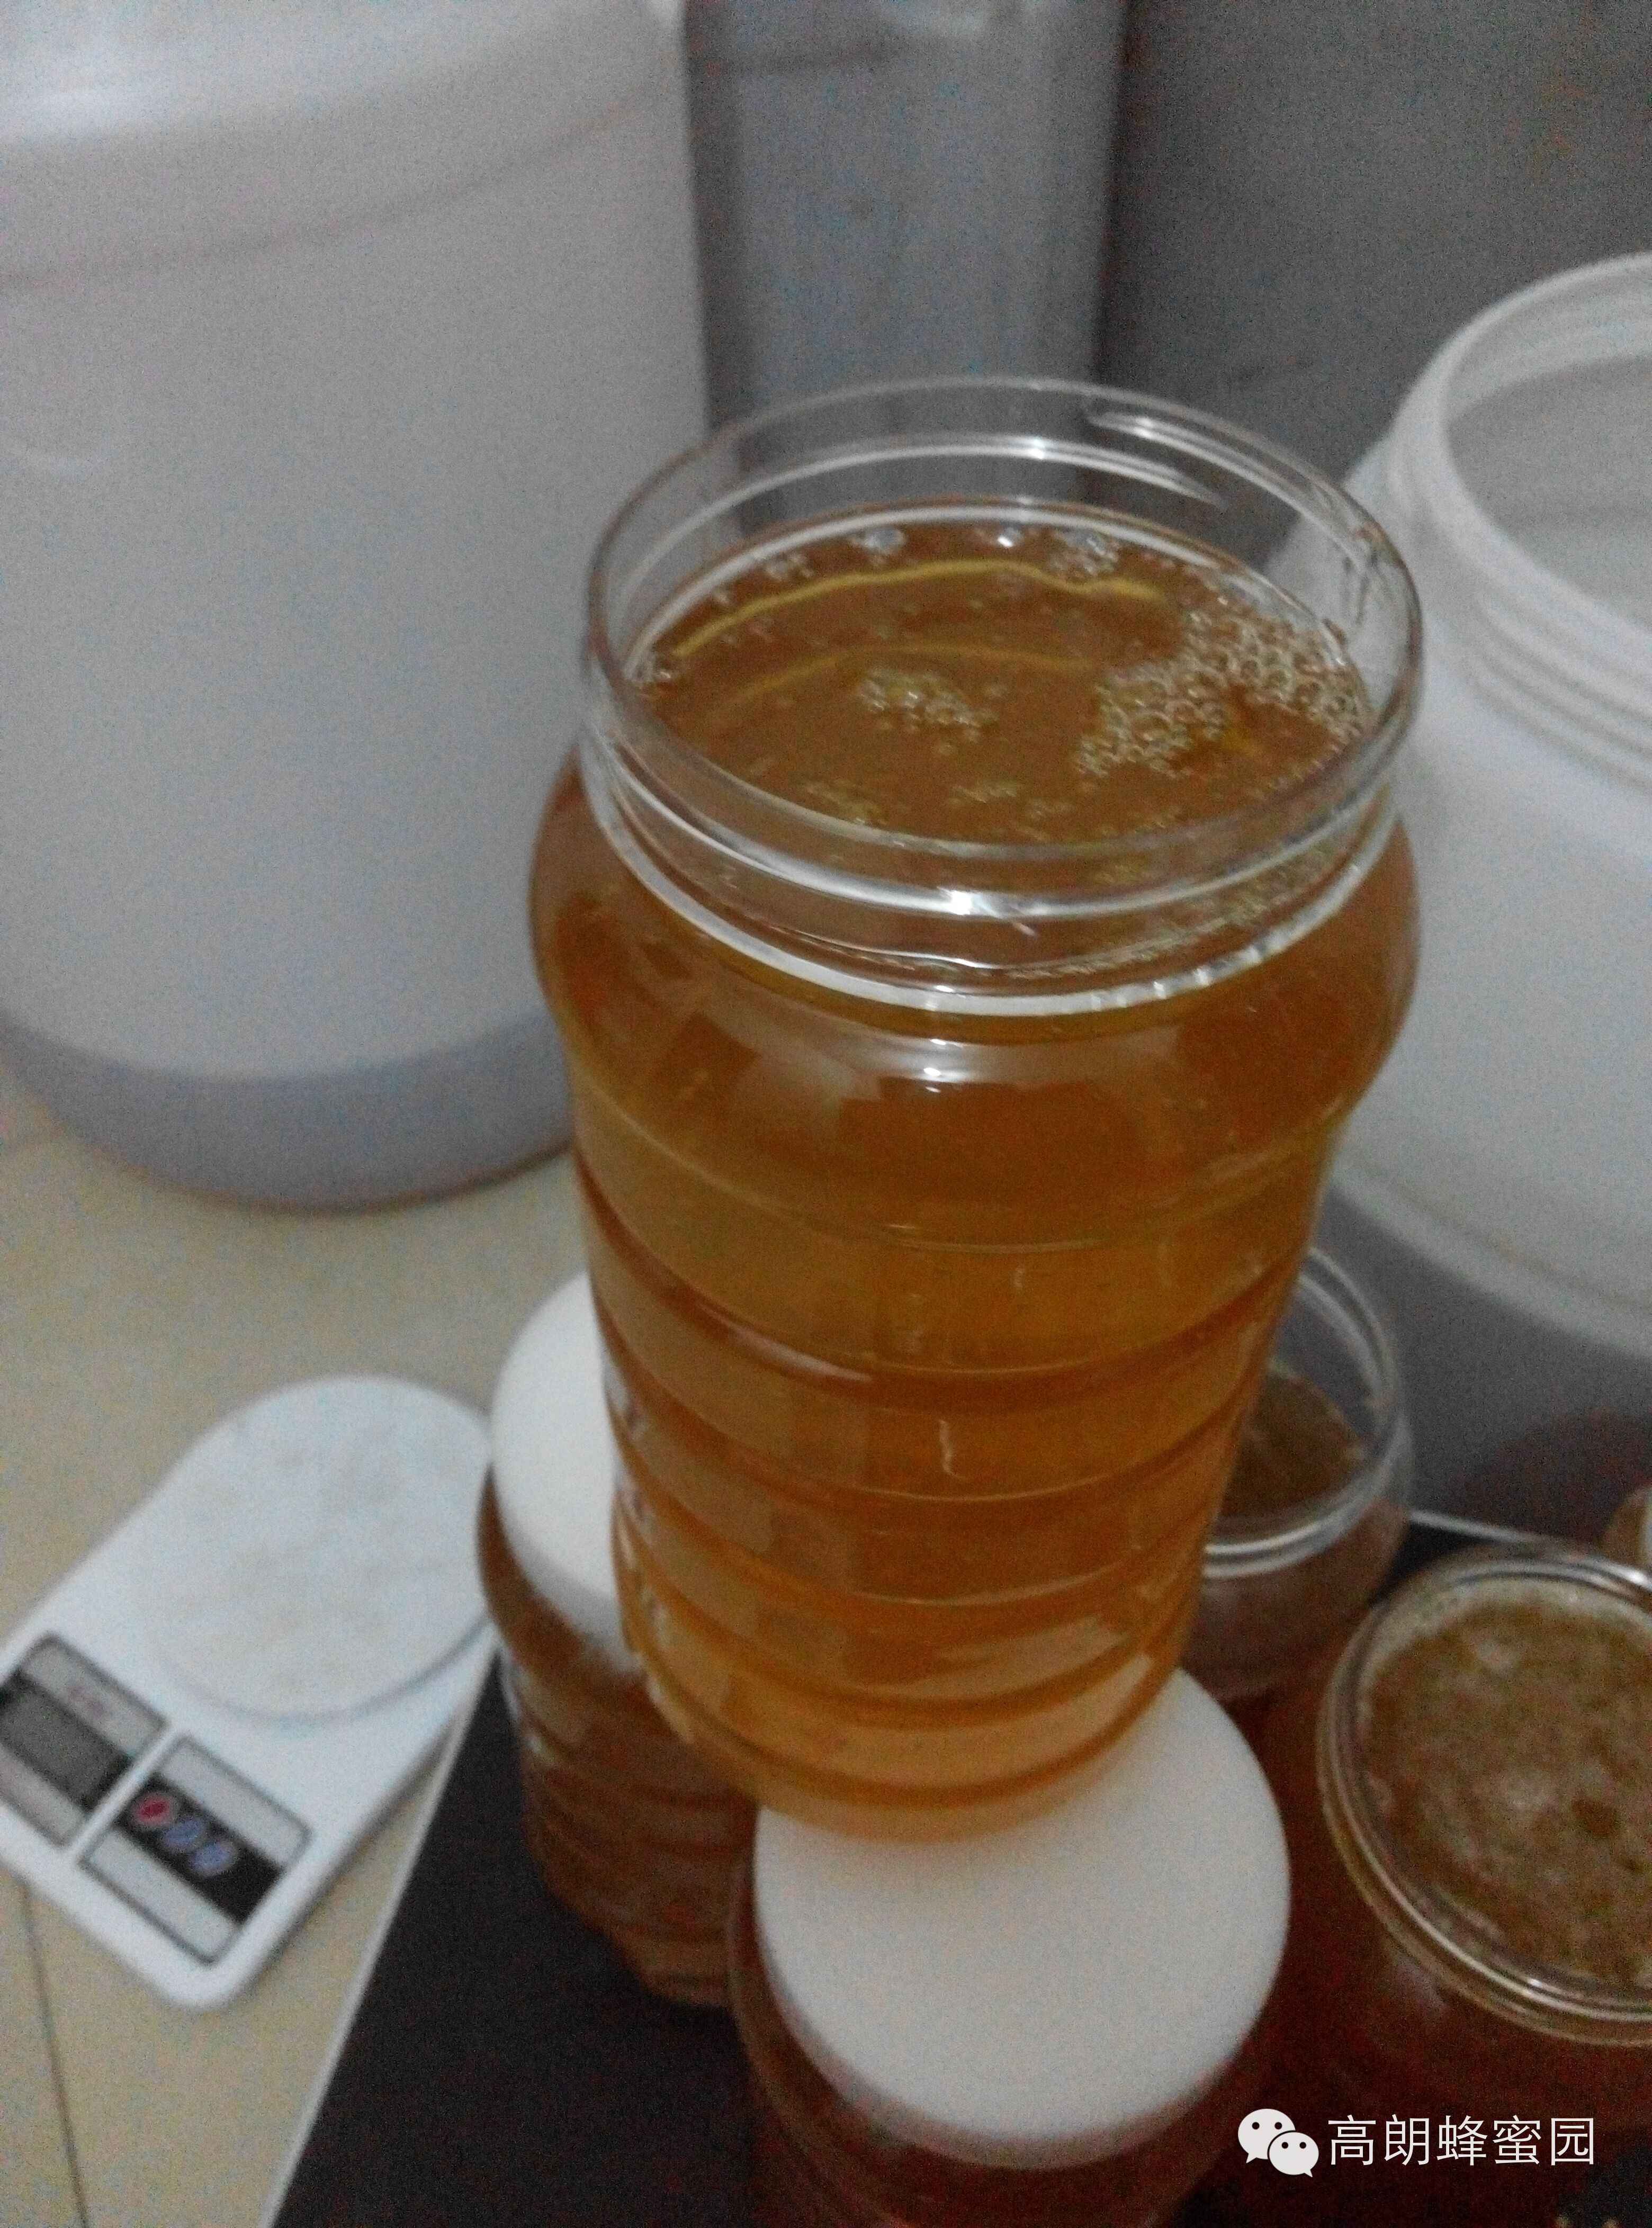 西红柿蜂蜜面膜的作用 哪个品牌的蜂蜜好 蜂蜜润唇膏 蜂蜜有丰胸功效吗 椴树蜂蜜的作用与功效